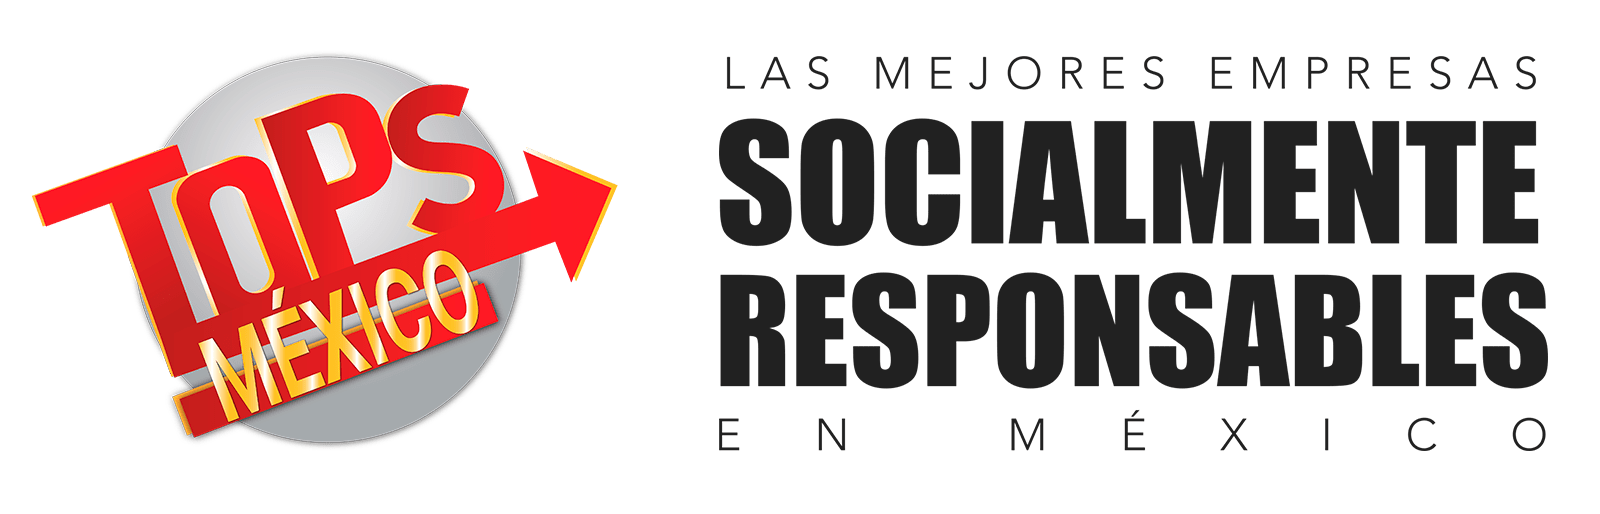 Empresas Socialmente Responsables